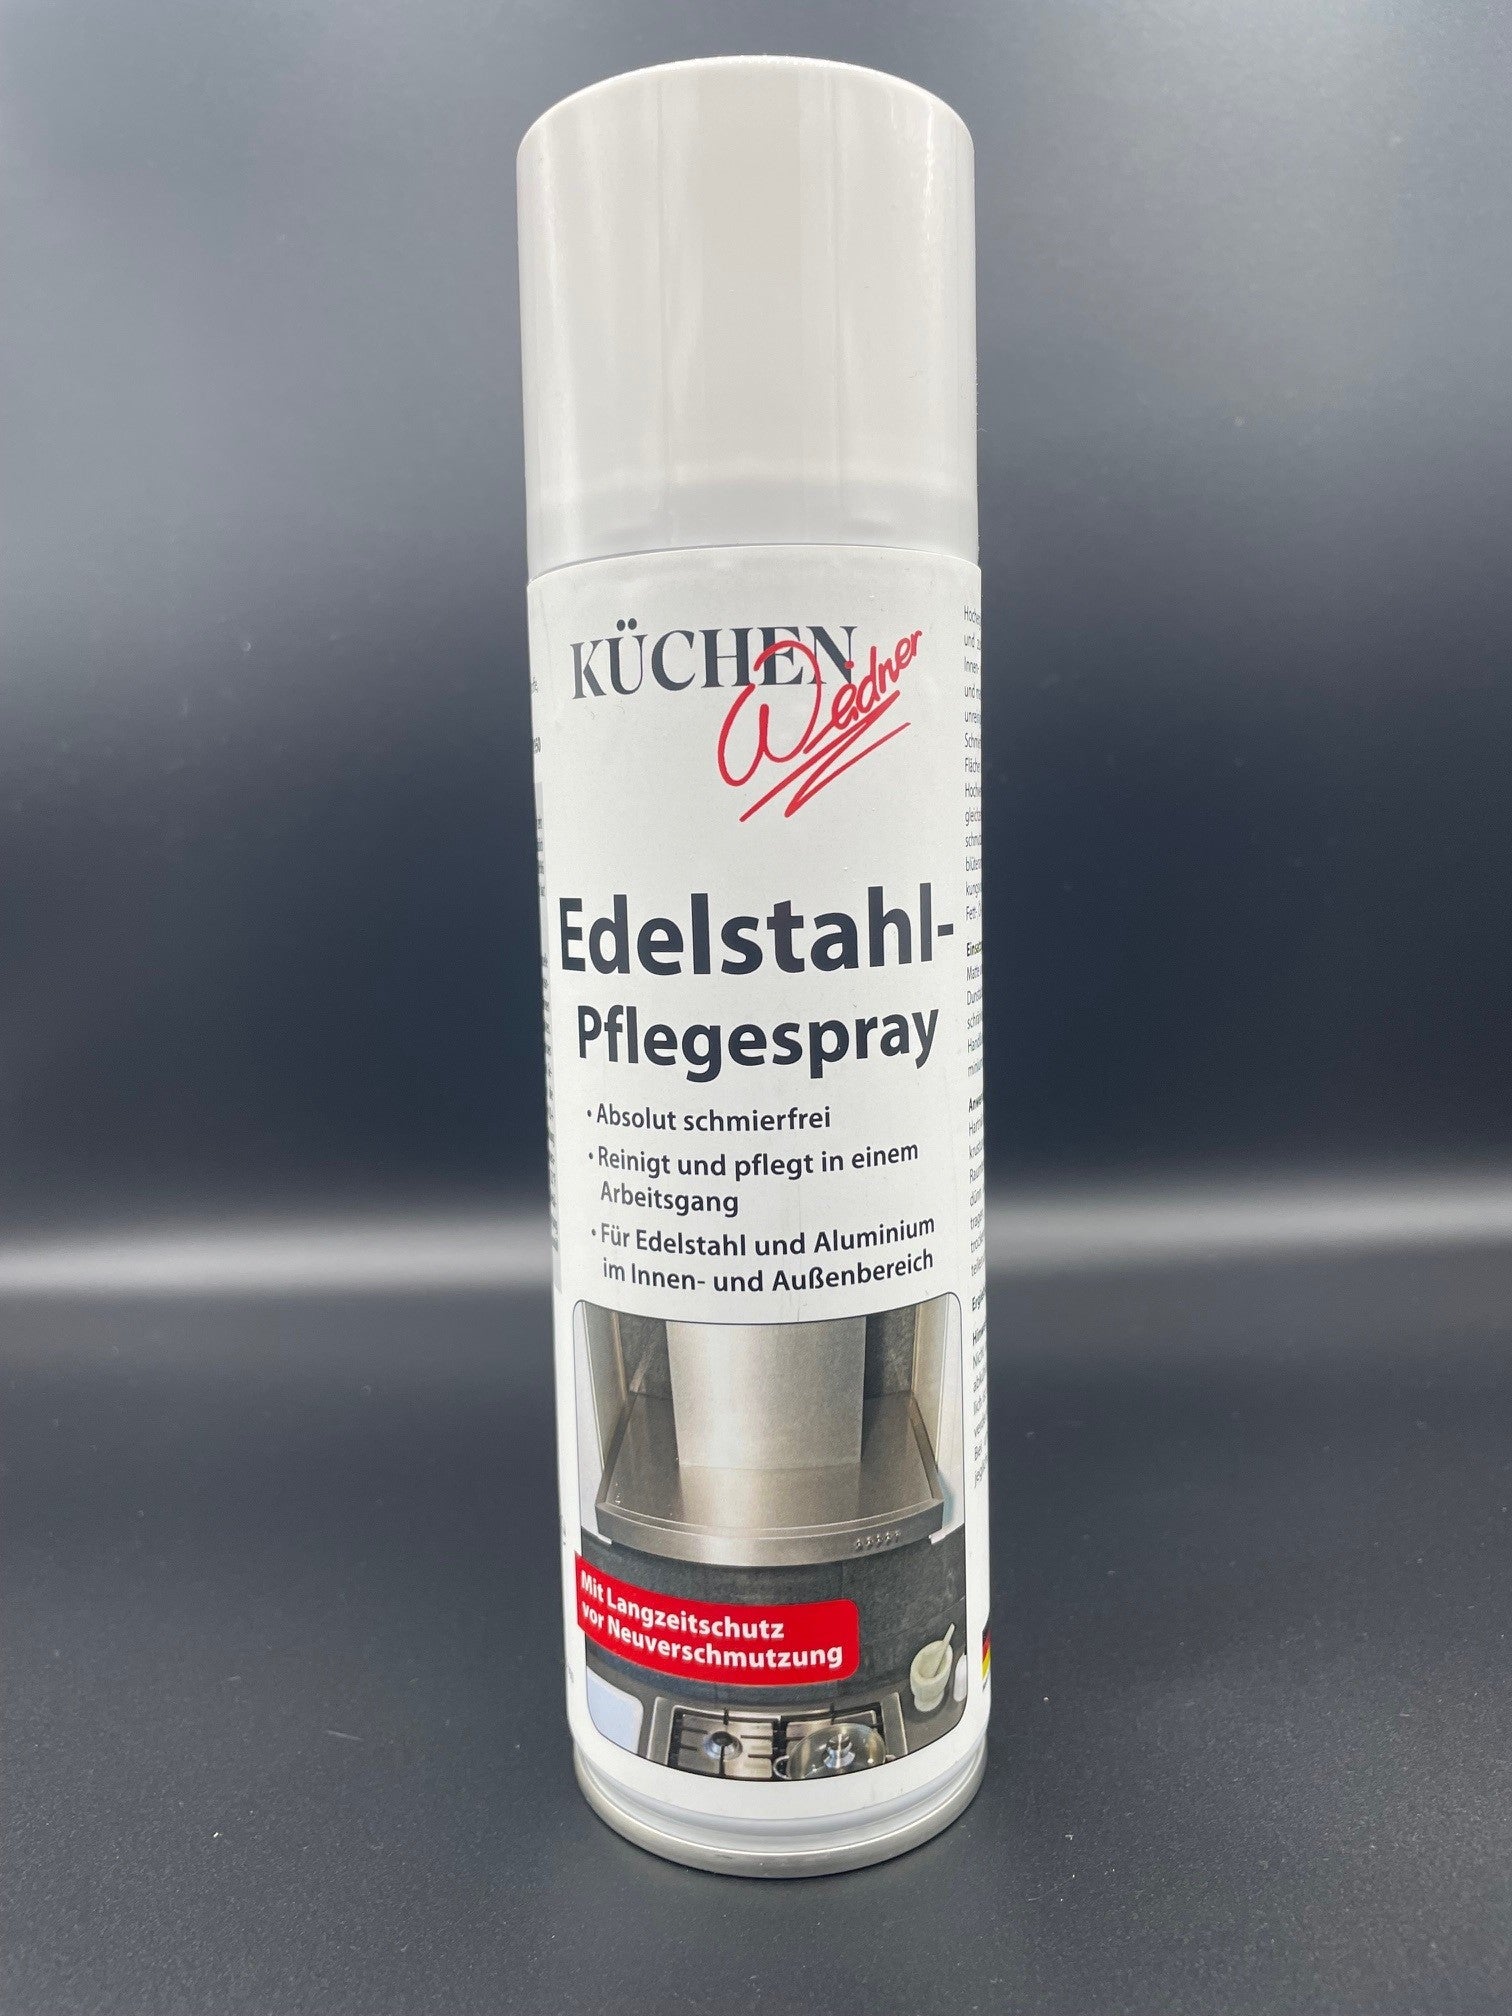 Edelstahl-Spray - INOX SPRAY